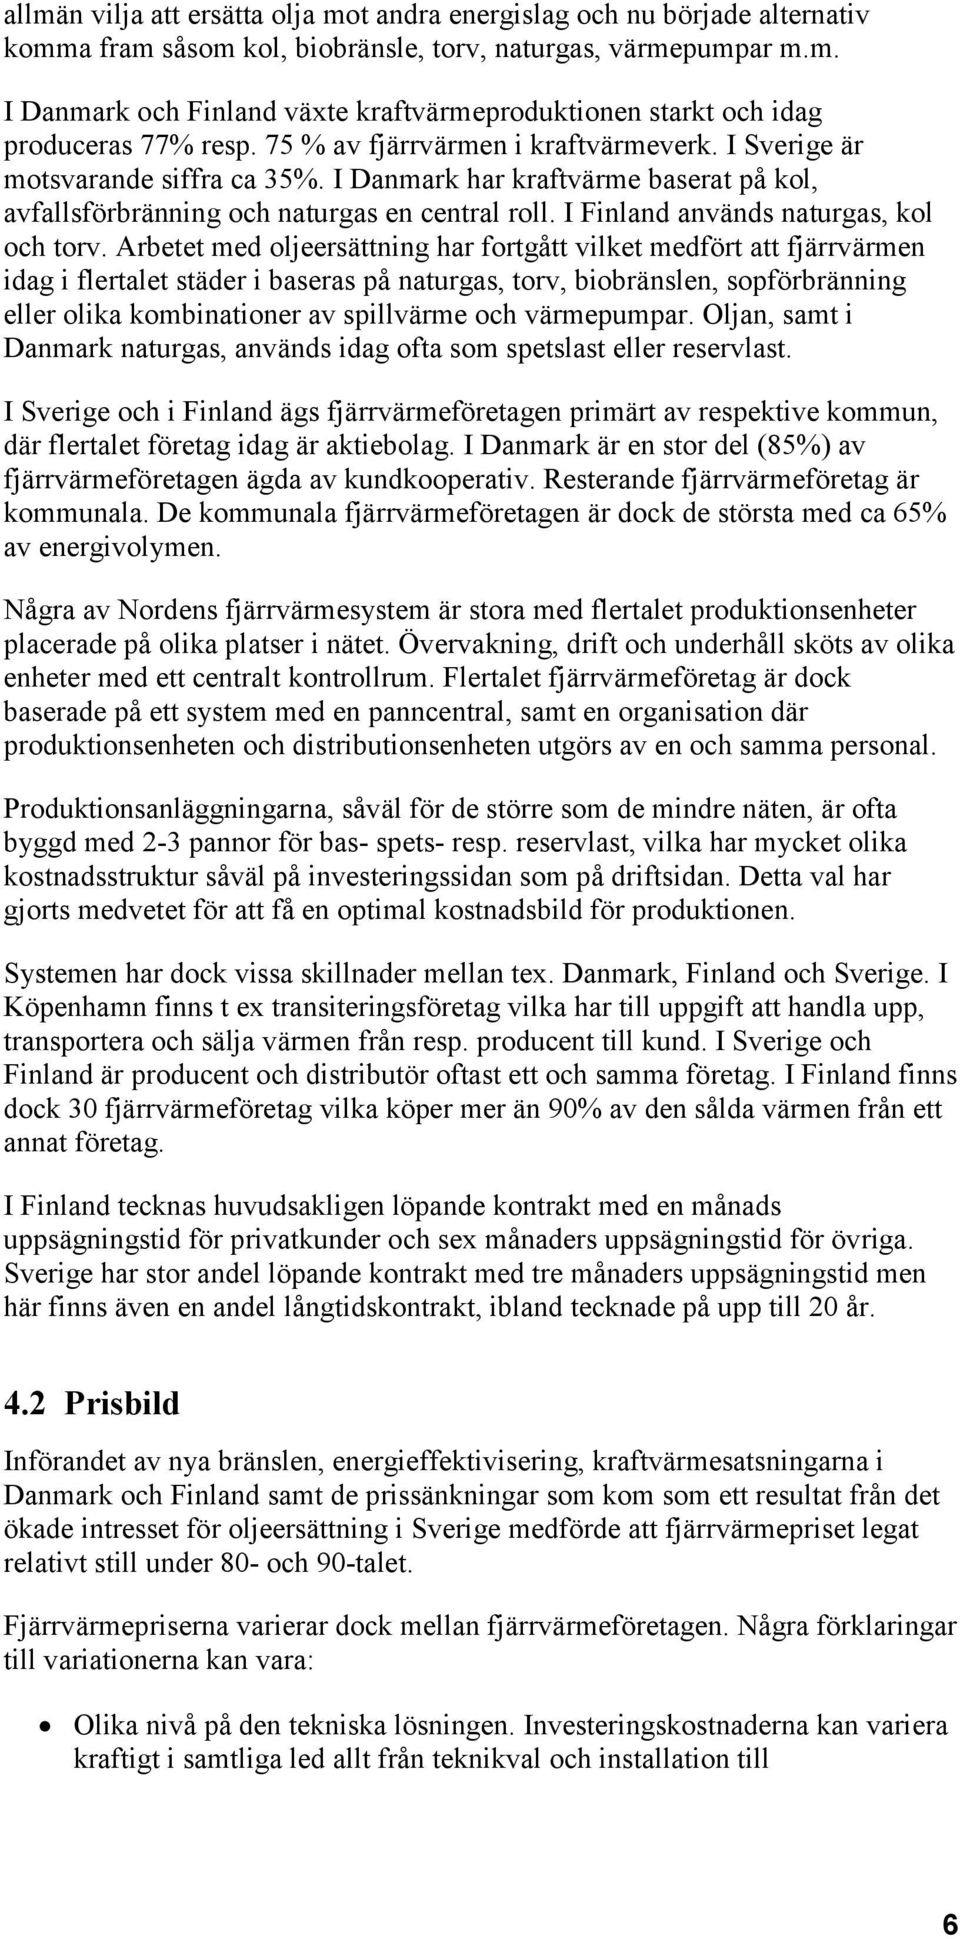 I Finland används naturgas, kol och torv.